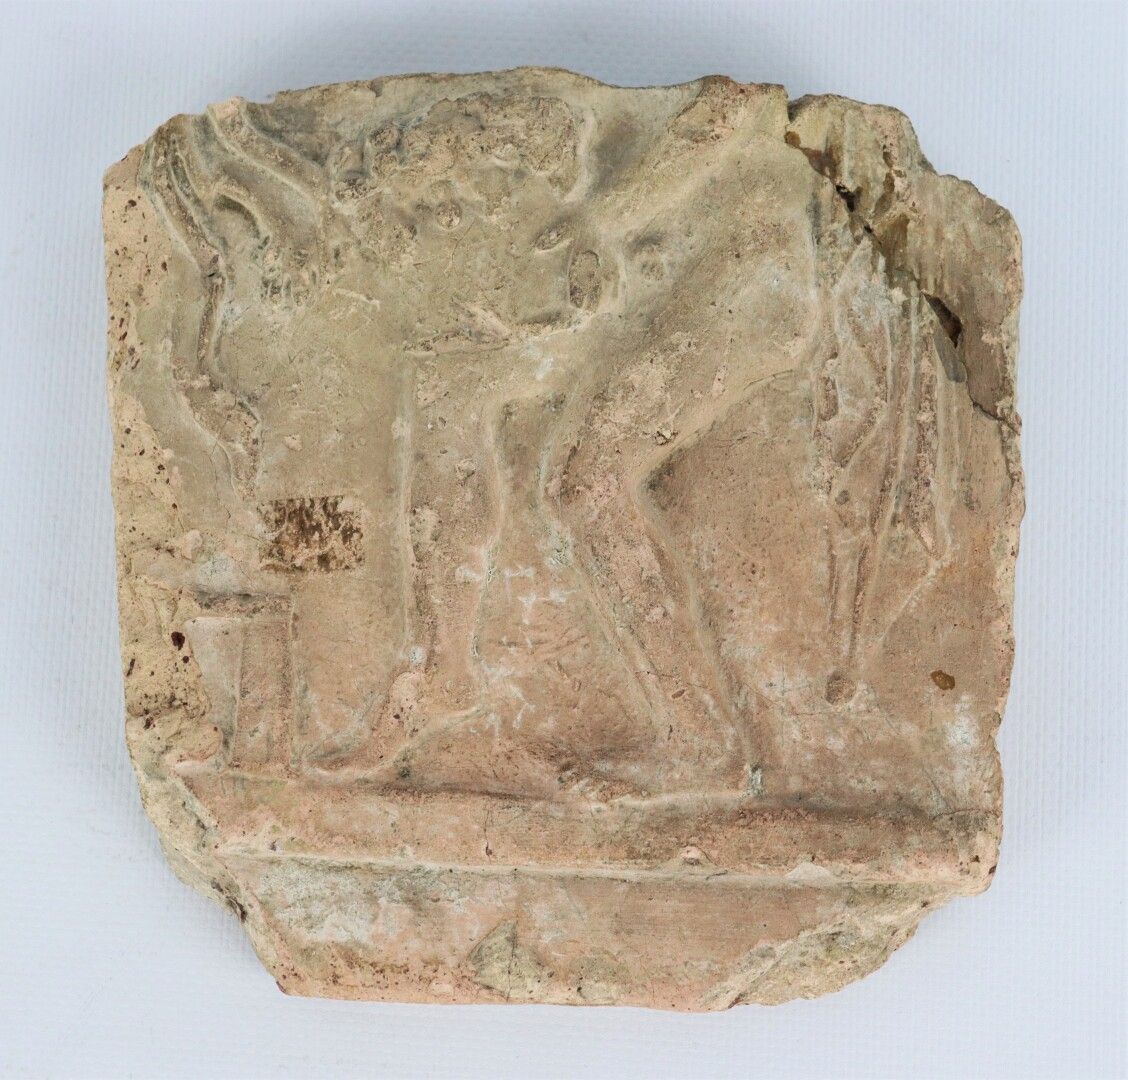 Null Frammento di un'urna funeraria etrusca.

H_15,8 cm W_15,8 cm